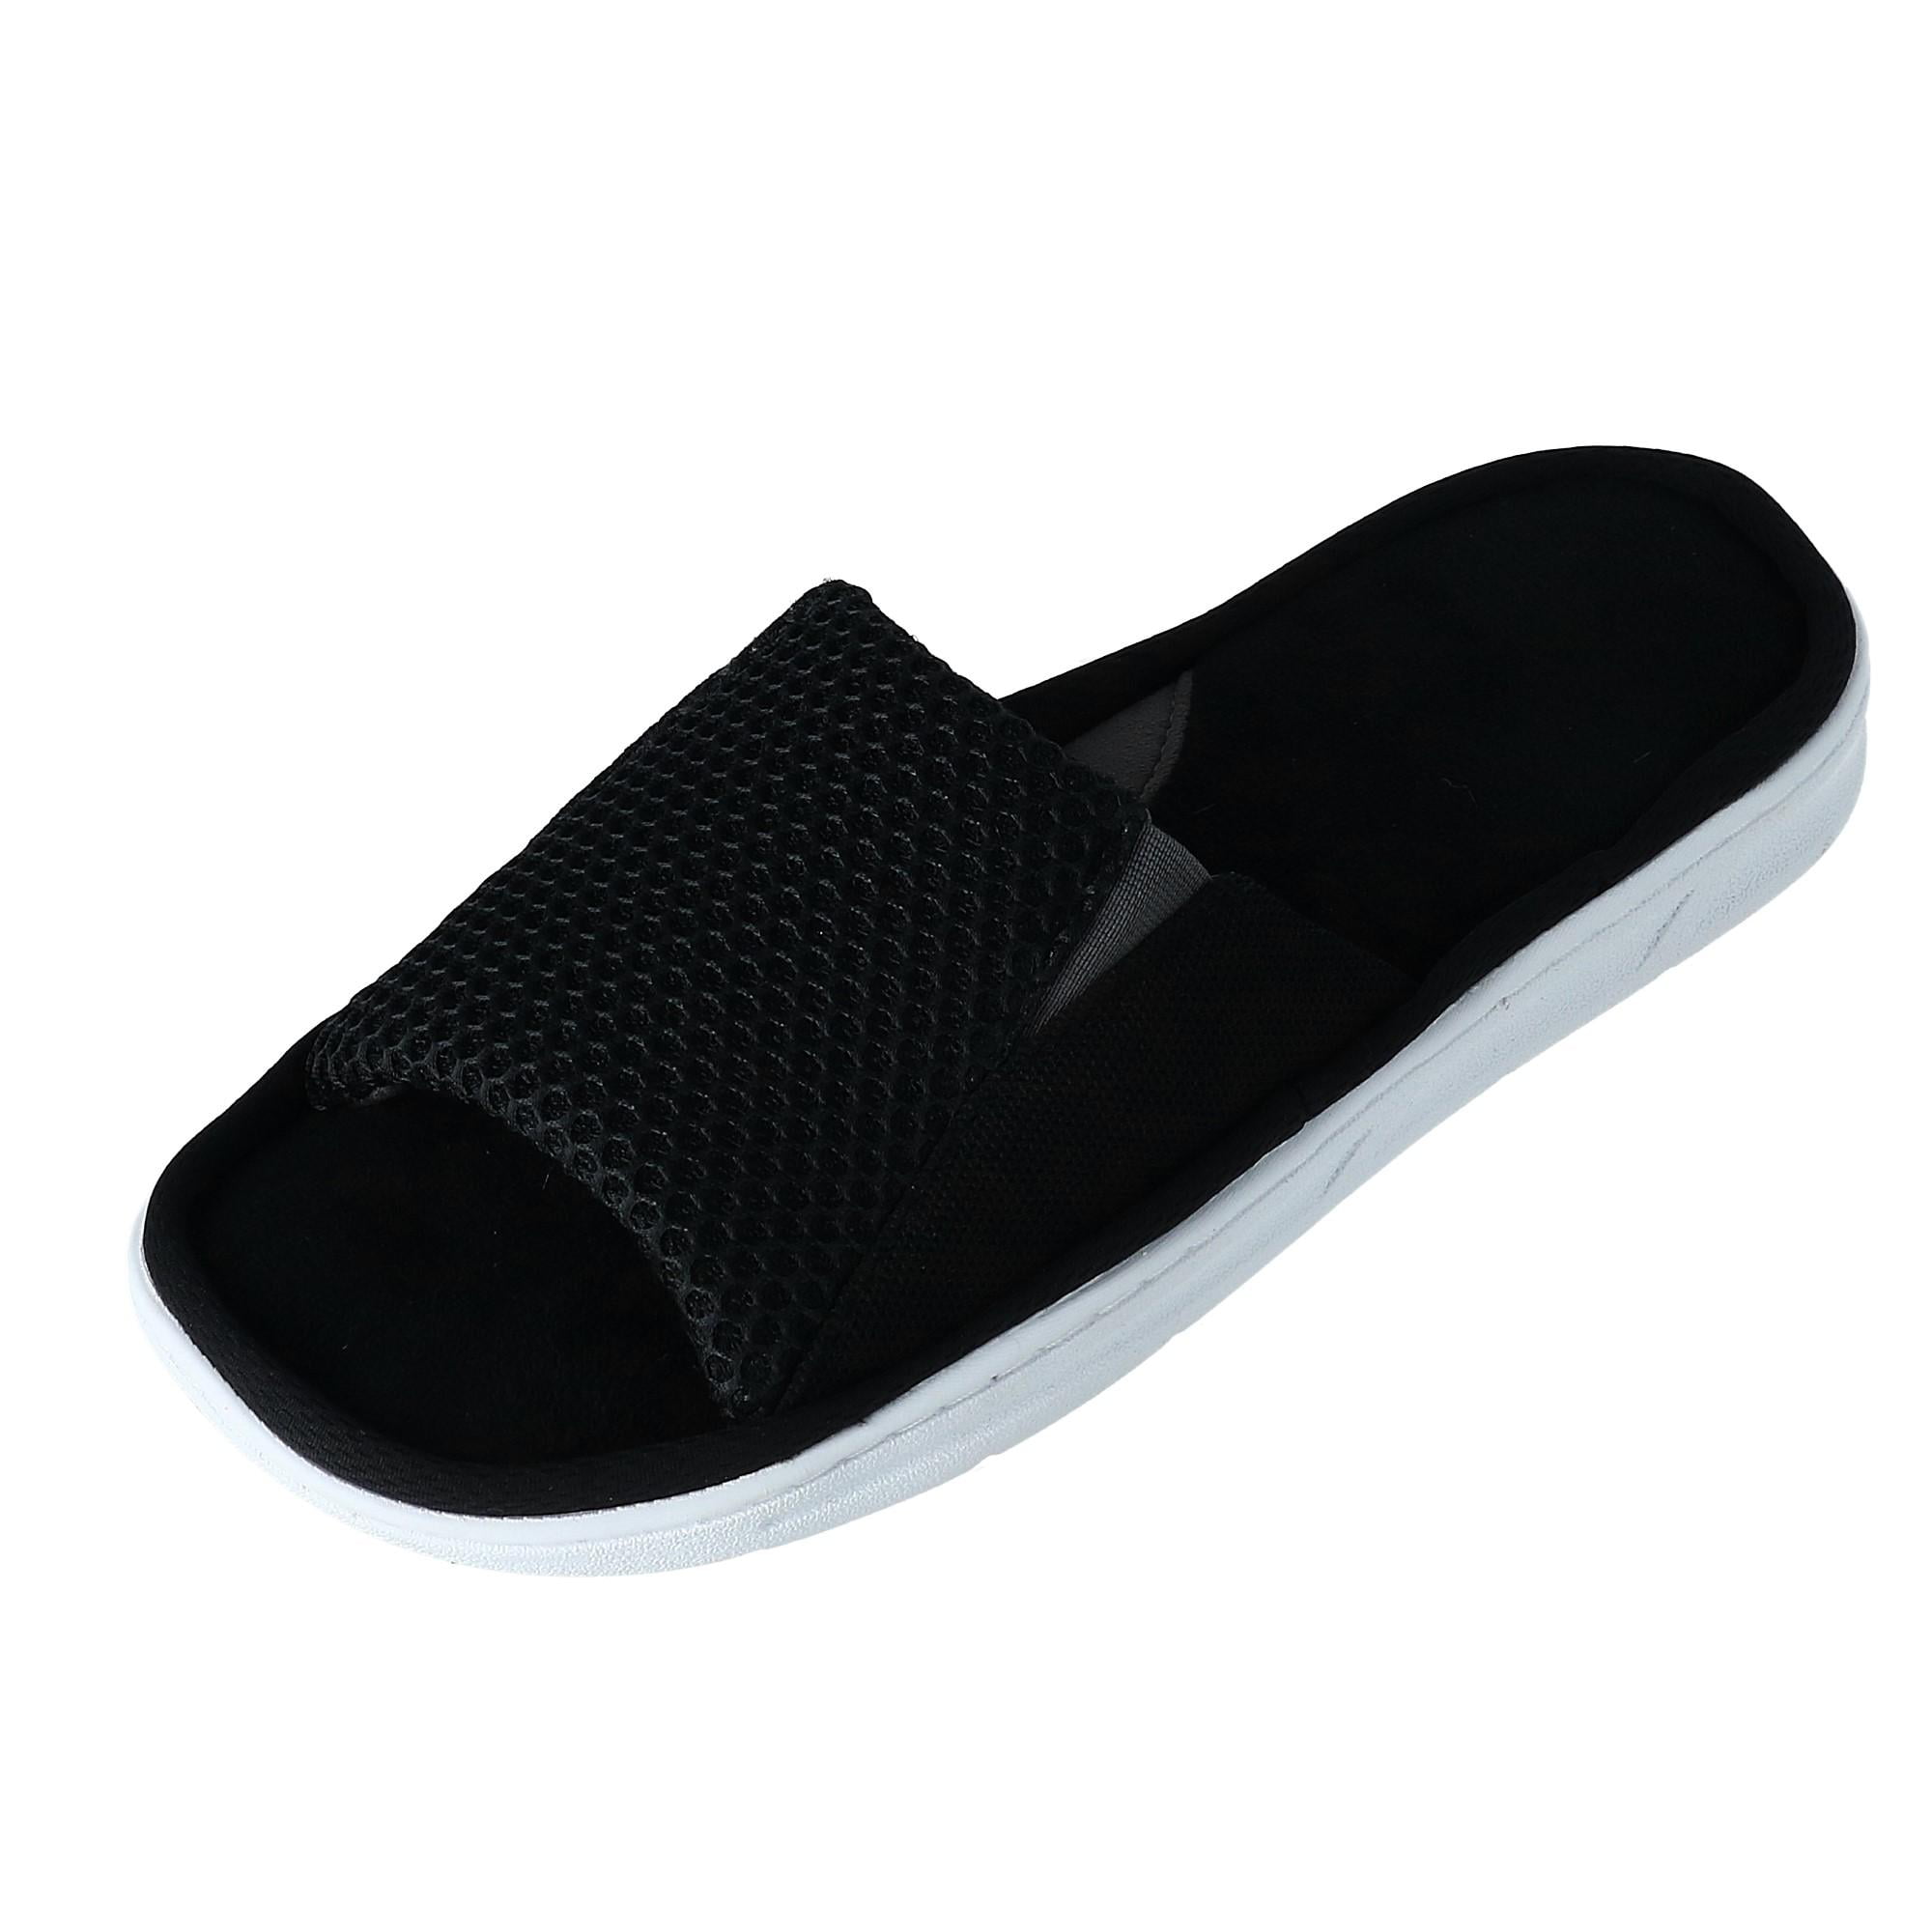 df by dearfoams men's slide slipper